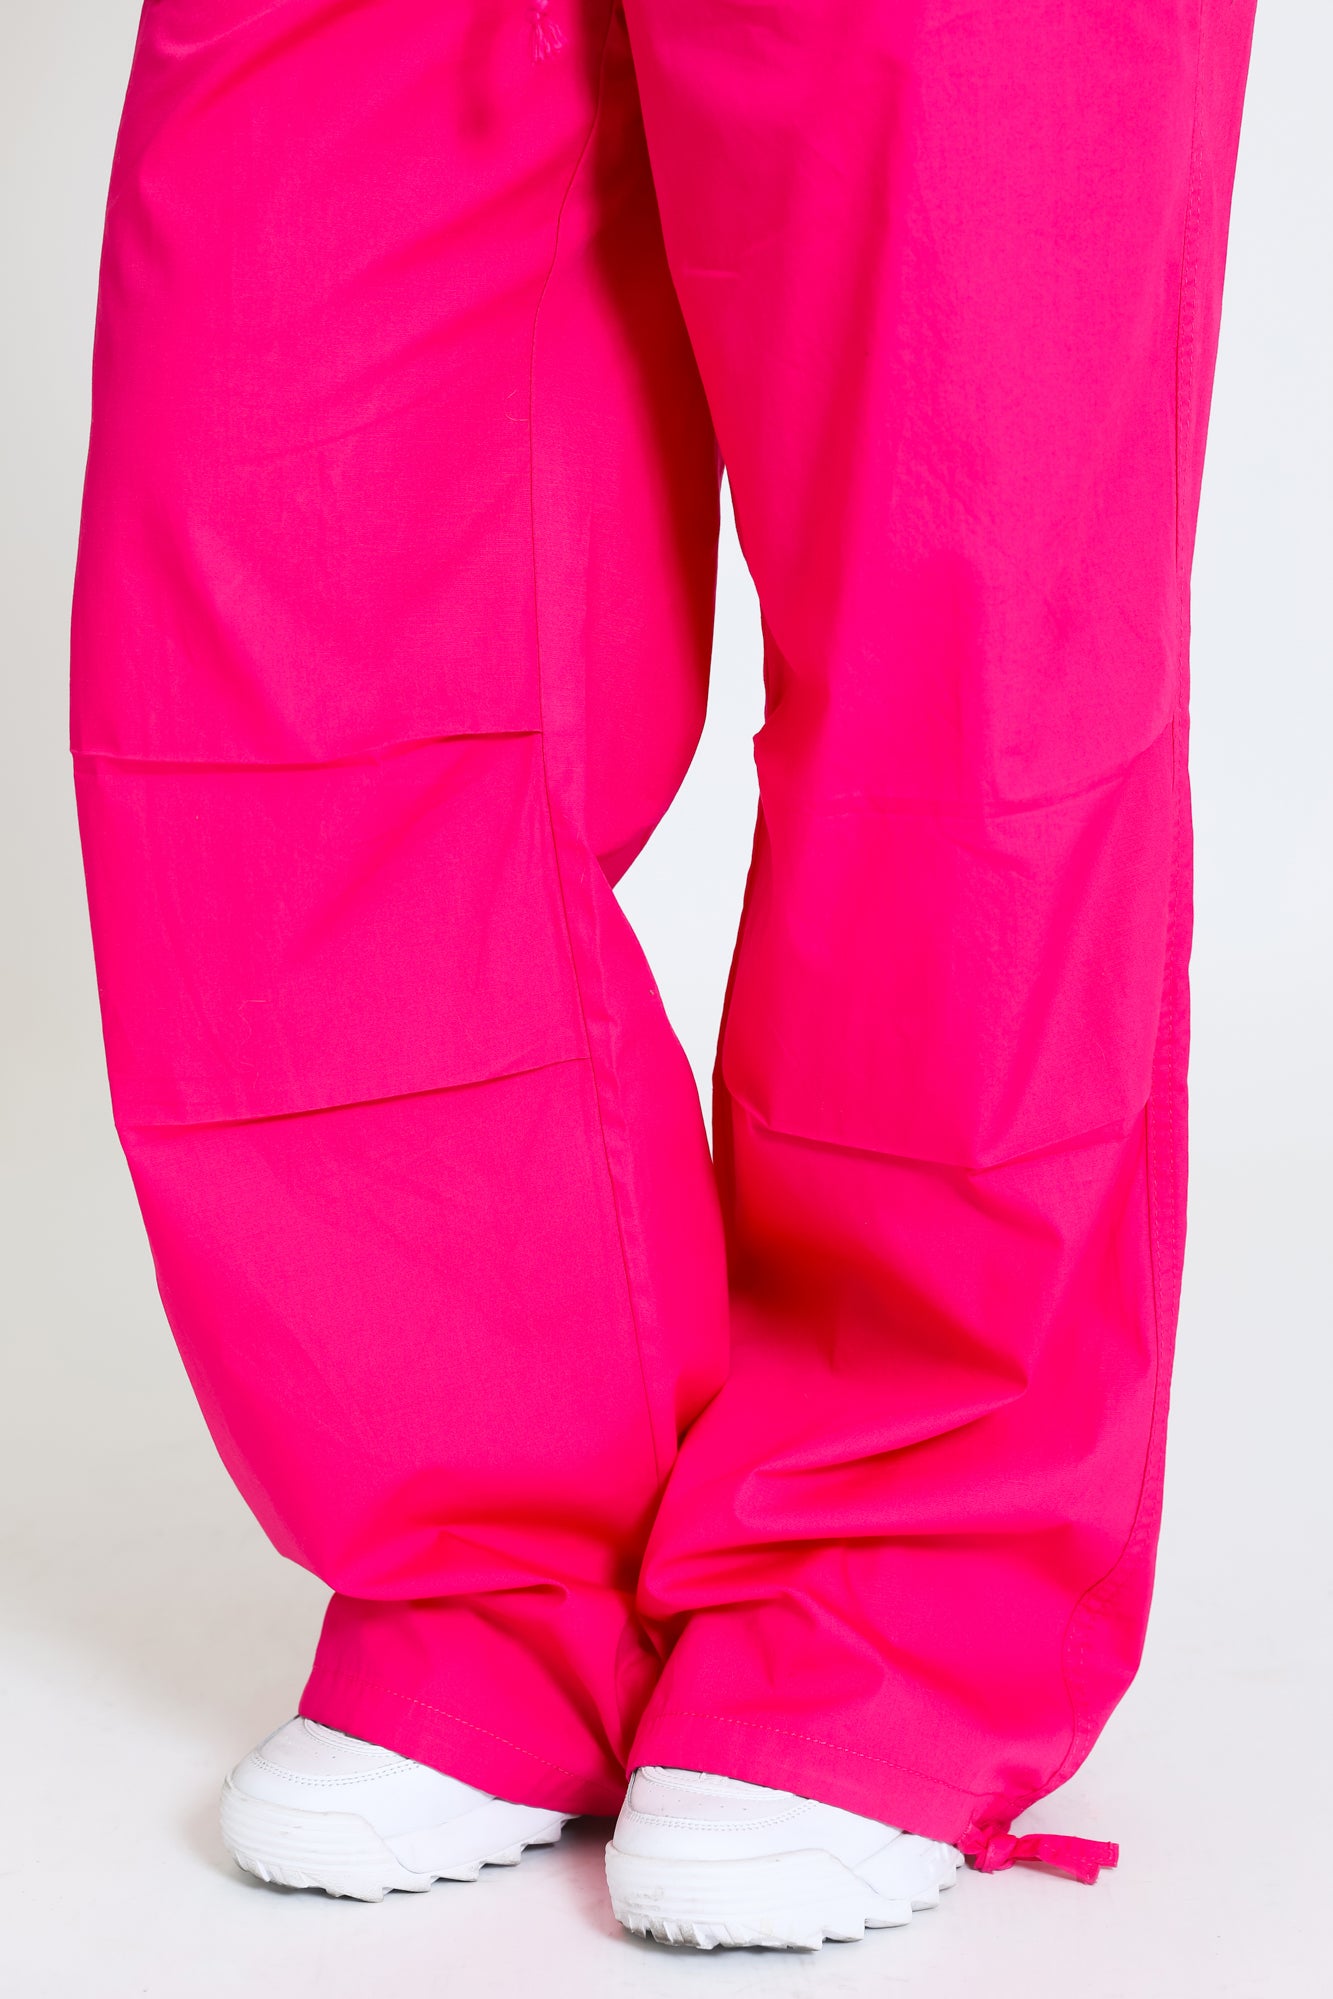 pink cargo pants outfit  Pink cargo pants outfit, Neon outfits, Pink cargo  pants outfits